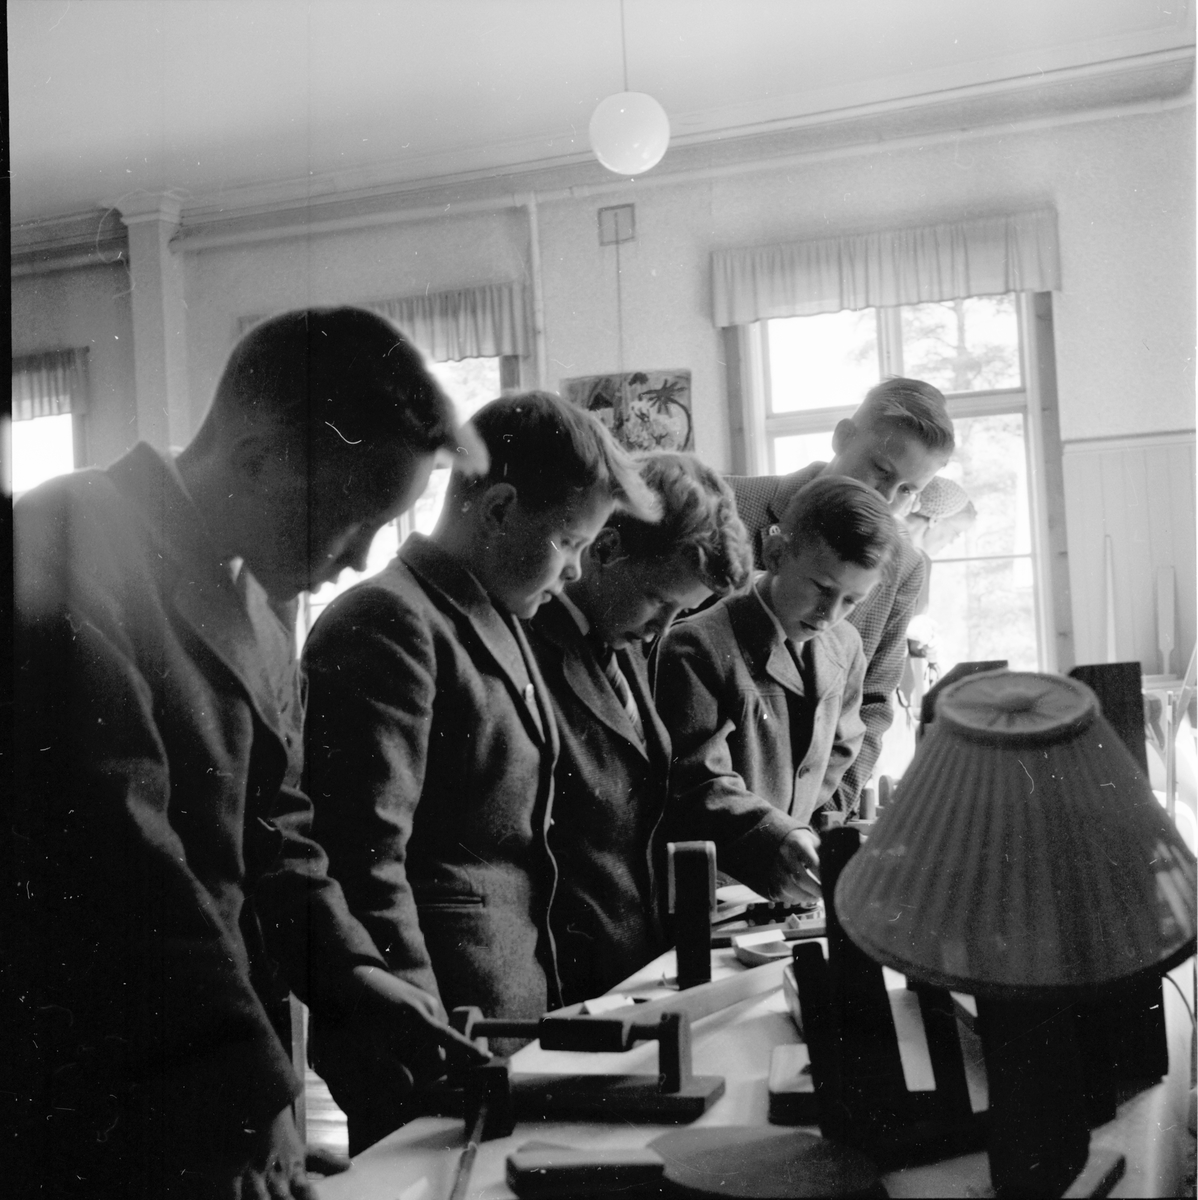 Skolavslutning i landskommunen.
1955